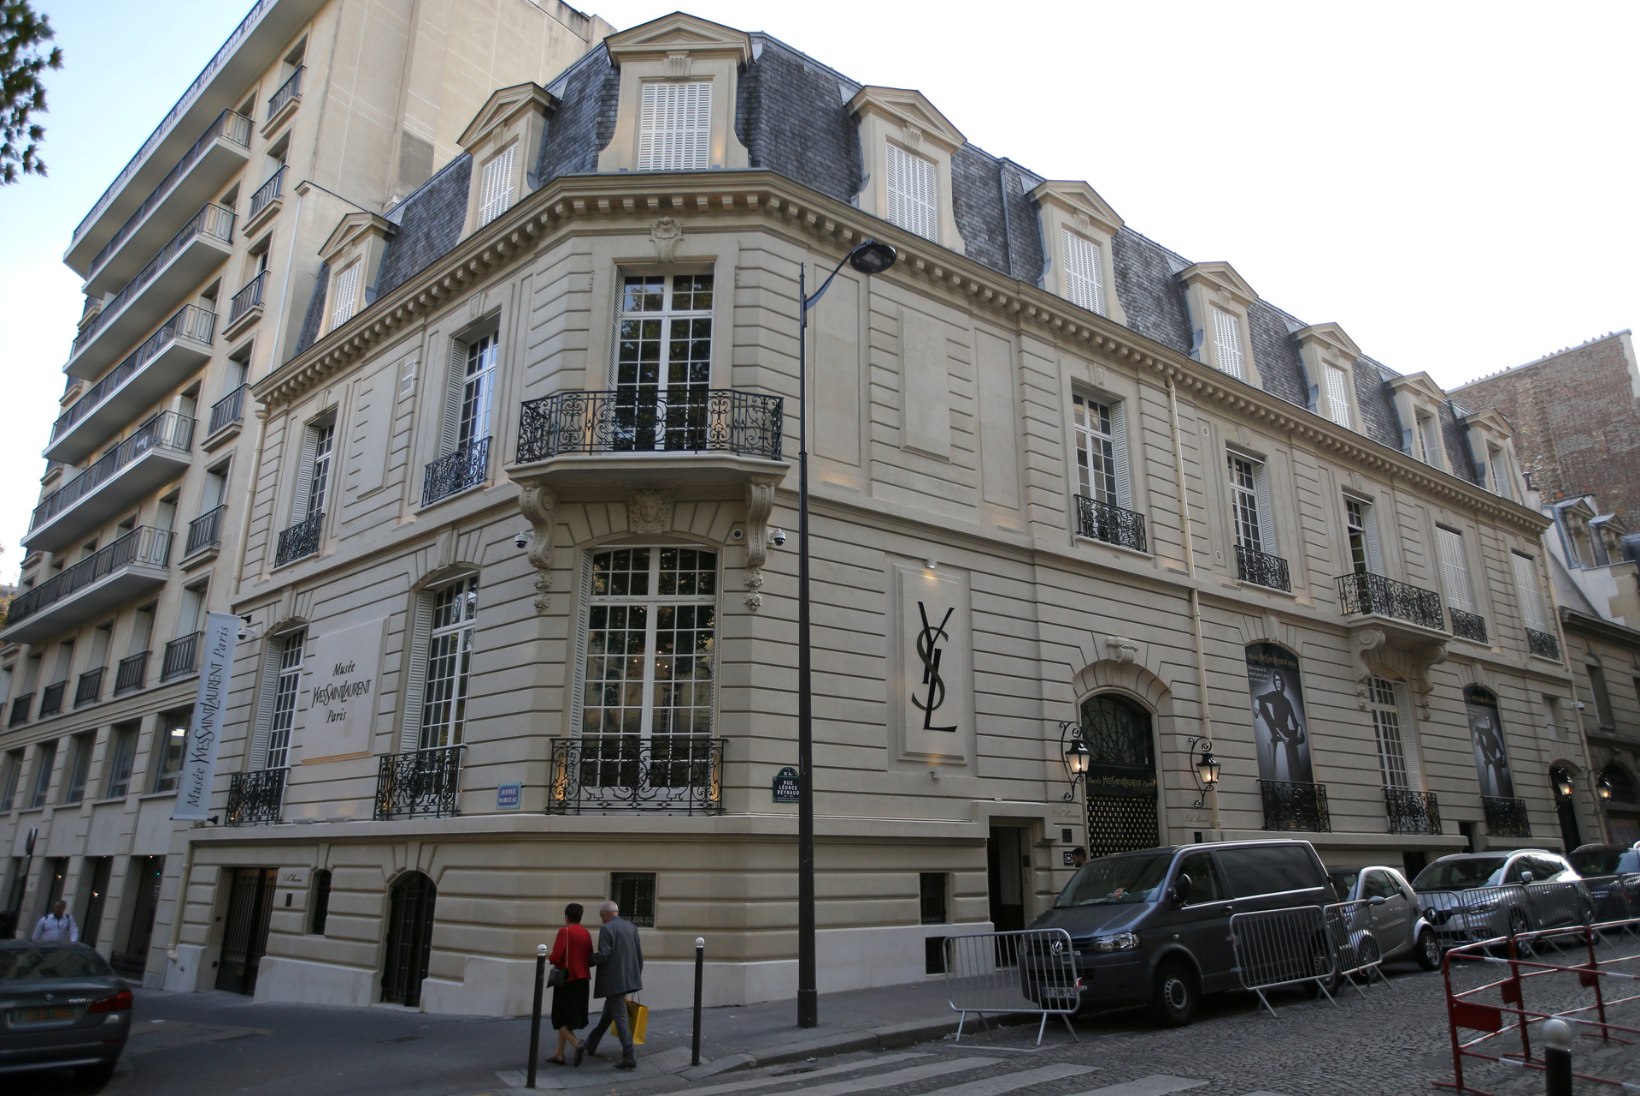 Pariisis avati Yves Saint Laurenti muuseum